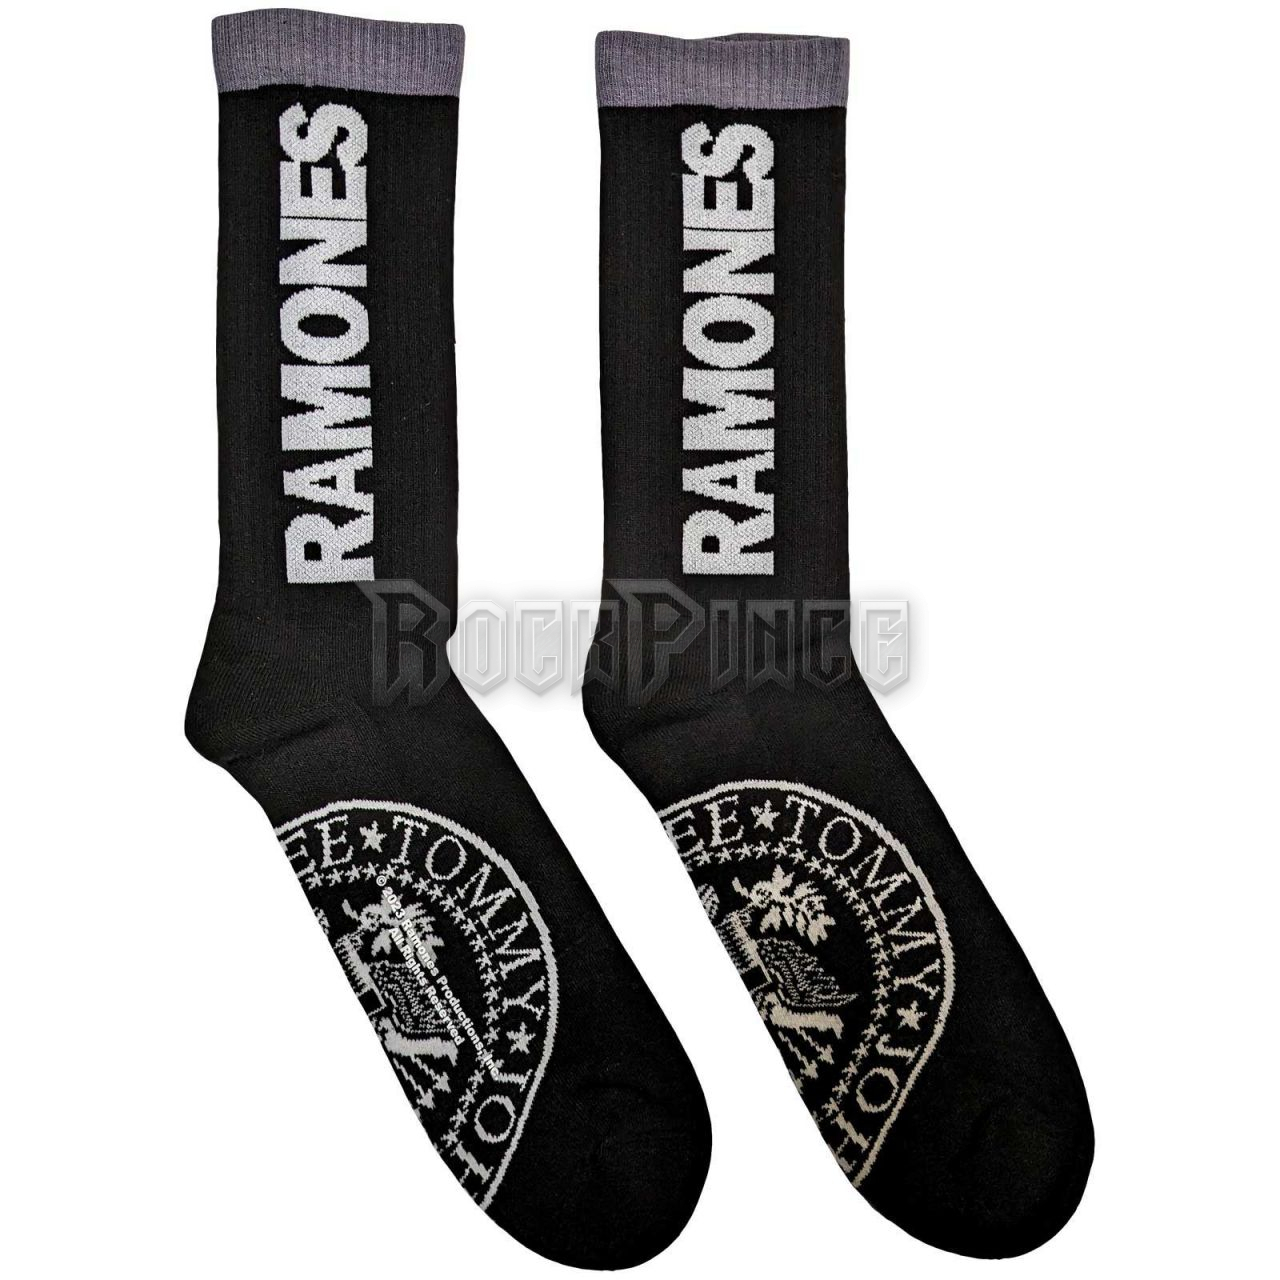 Ramones - Presidential Seal - unisex bokazokni (egy méret: 40-45) - RASCK01MB